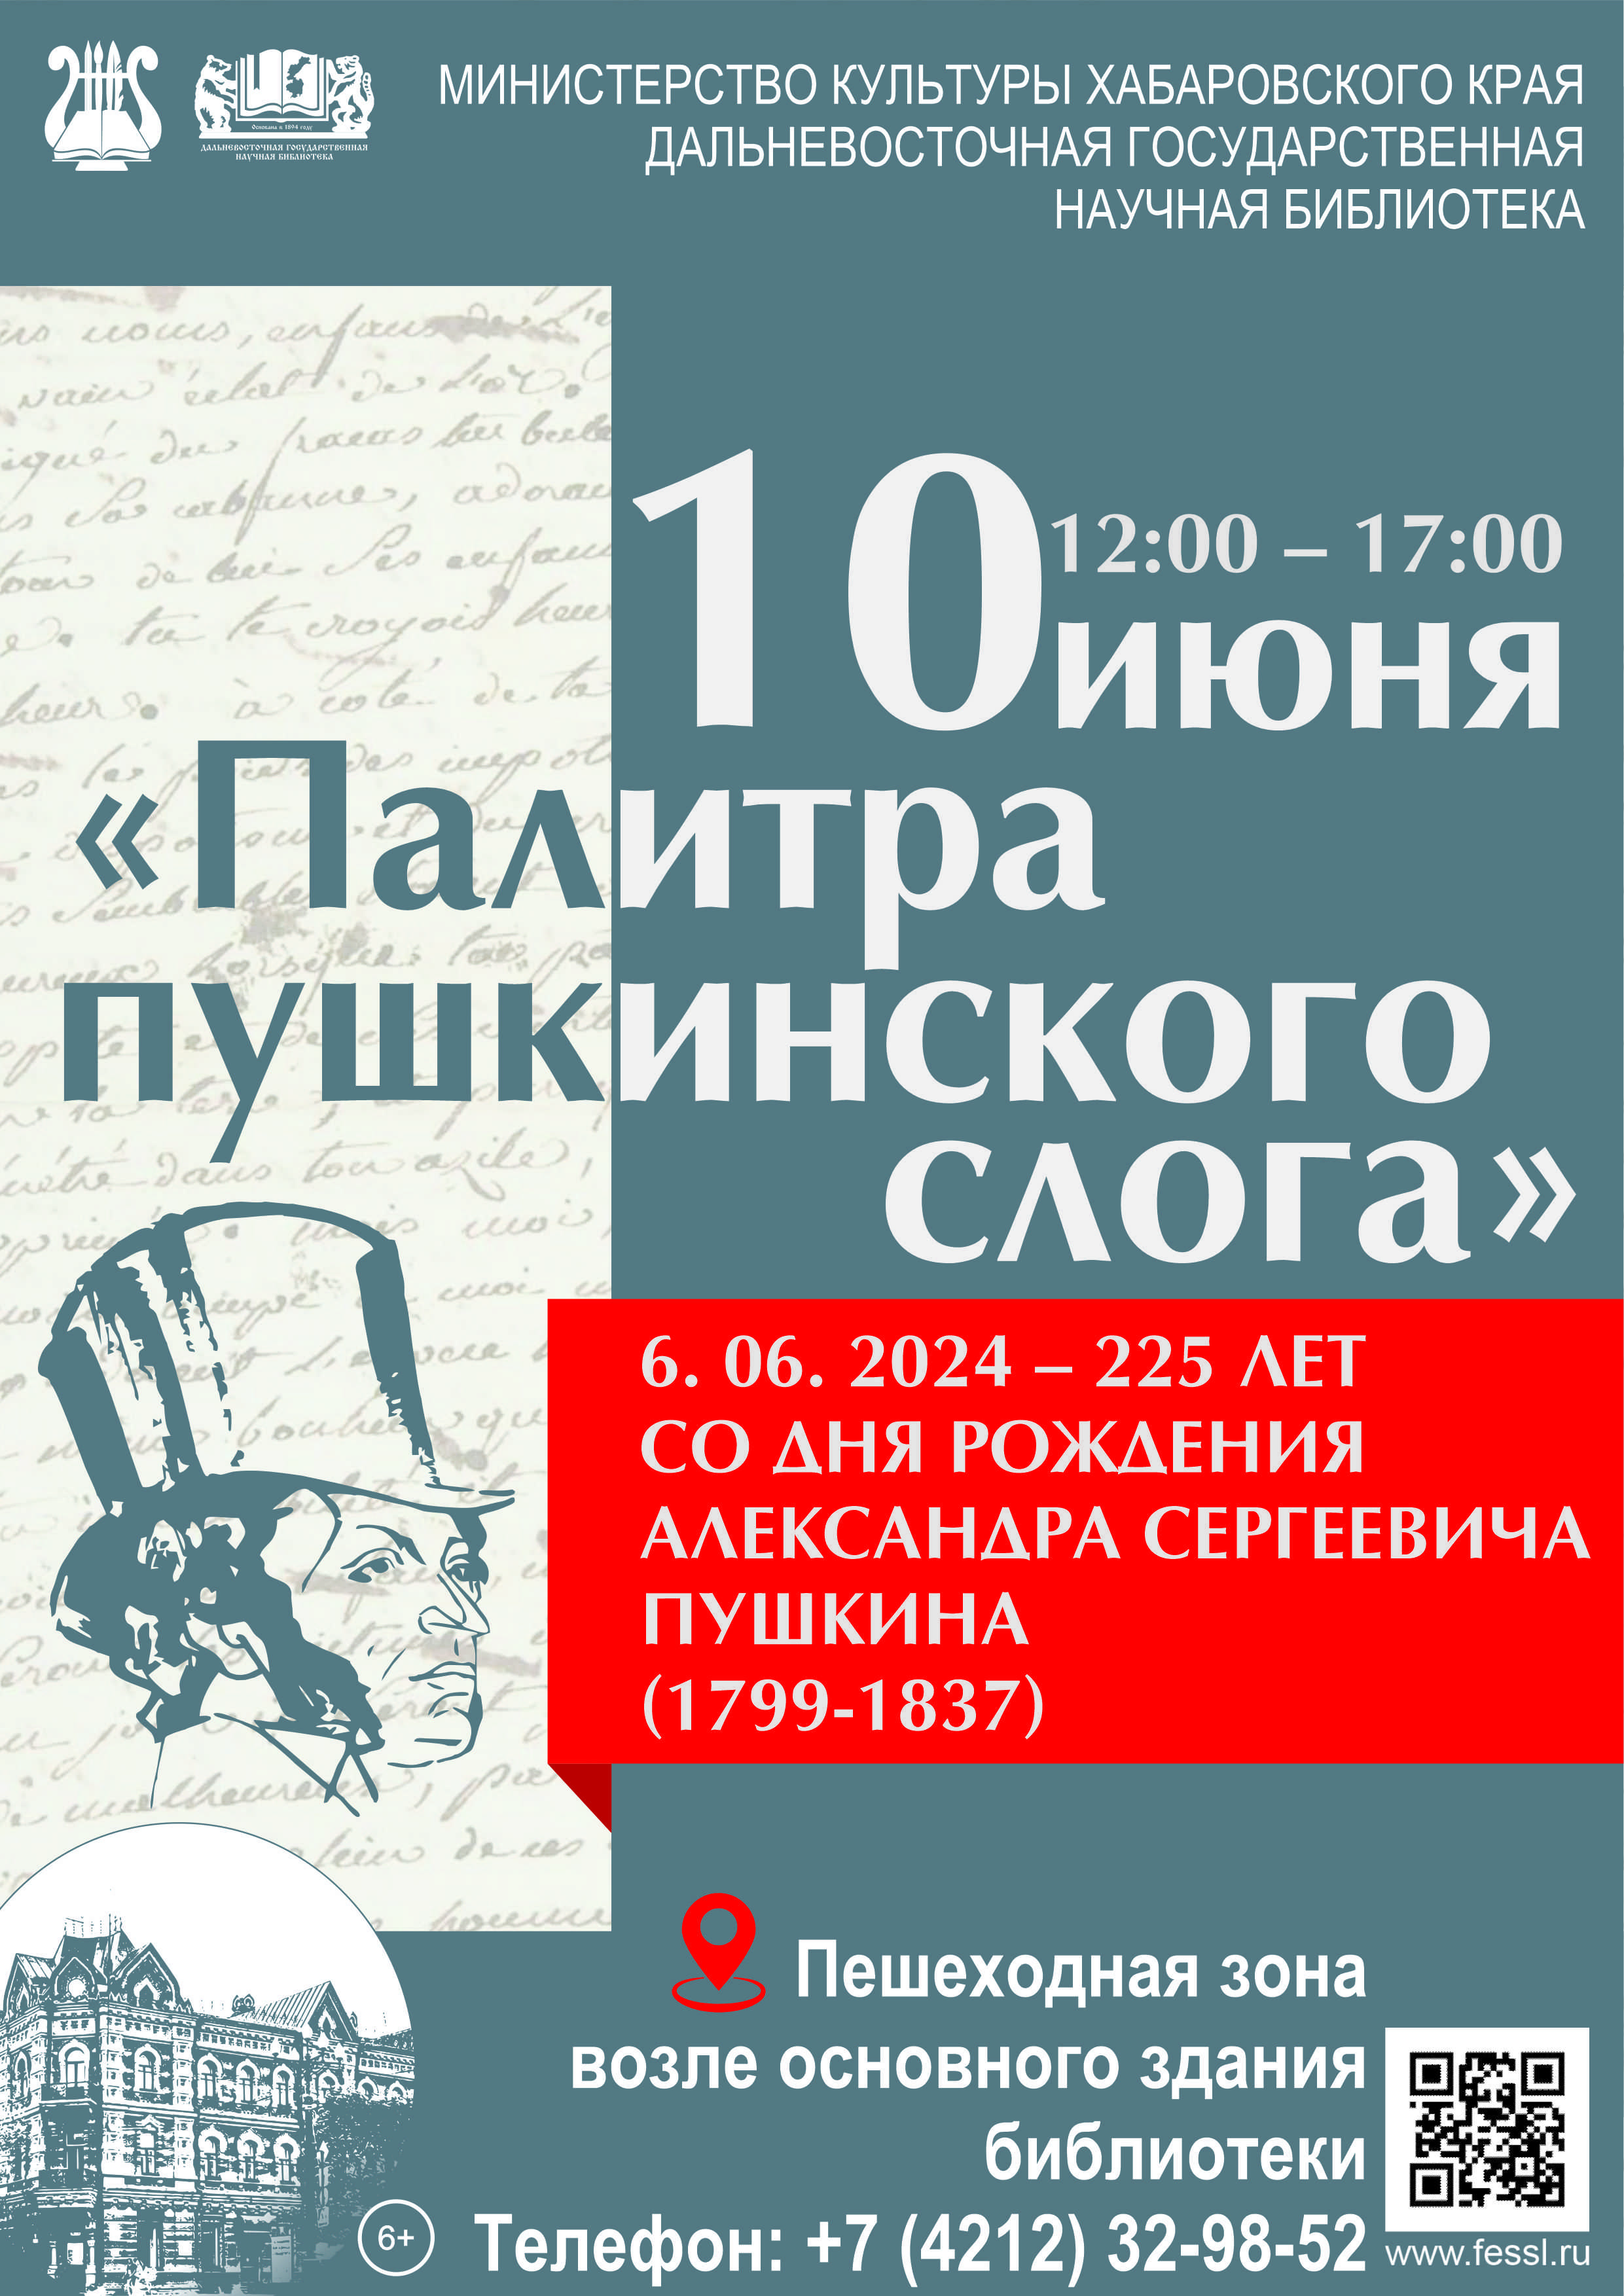 Приглашаем принять участие в праздничной литературной акции «Палитра пушкинского слога».